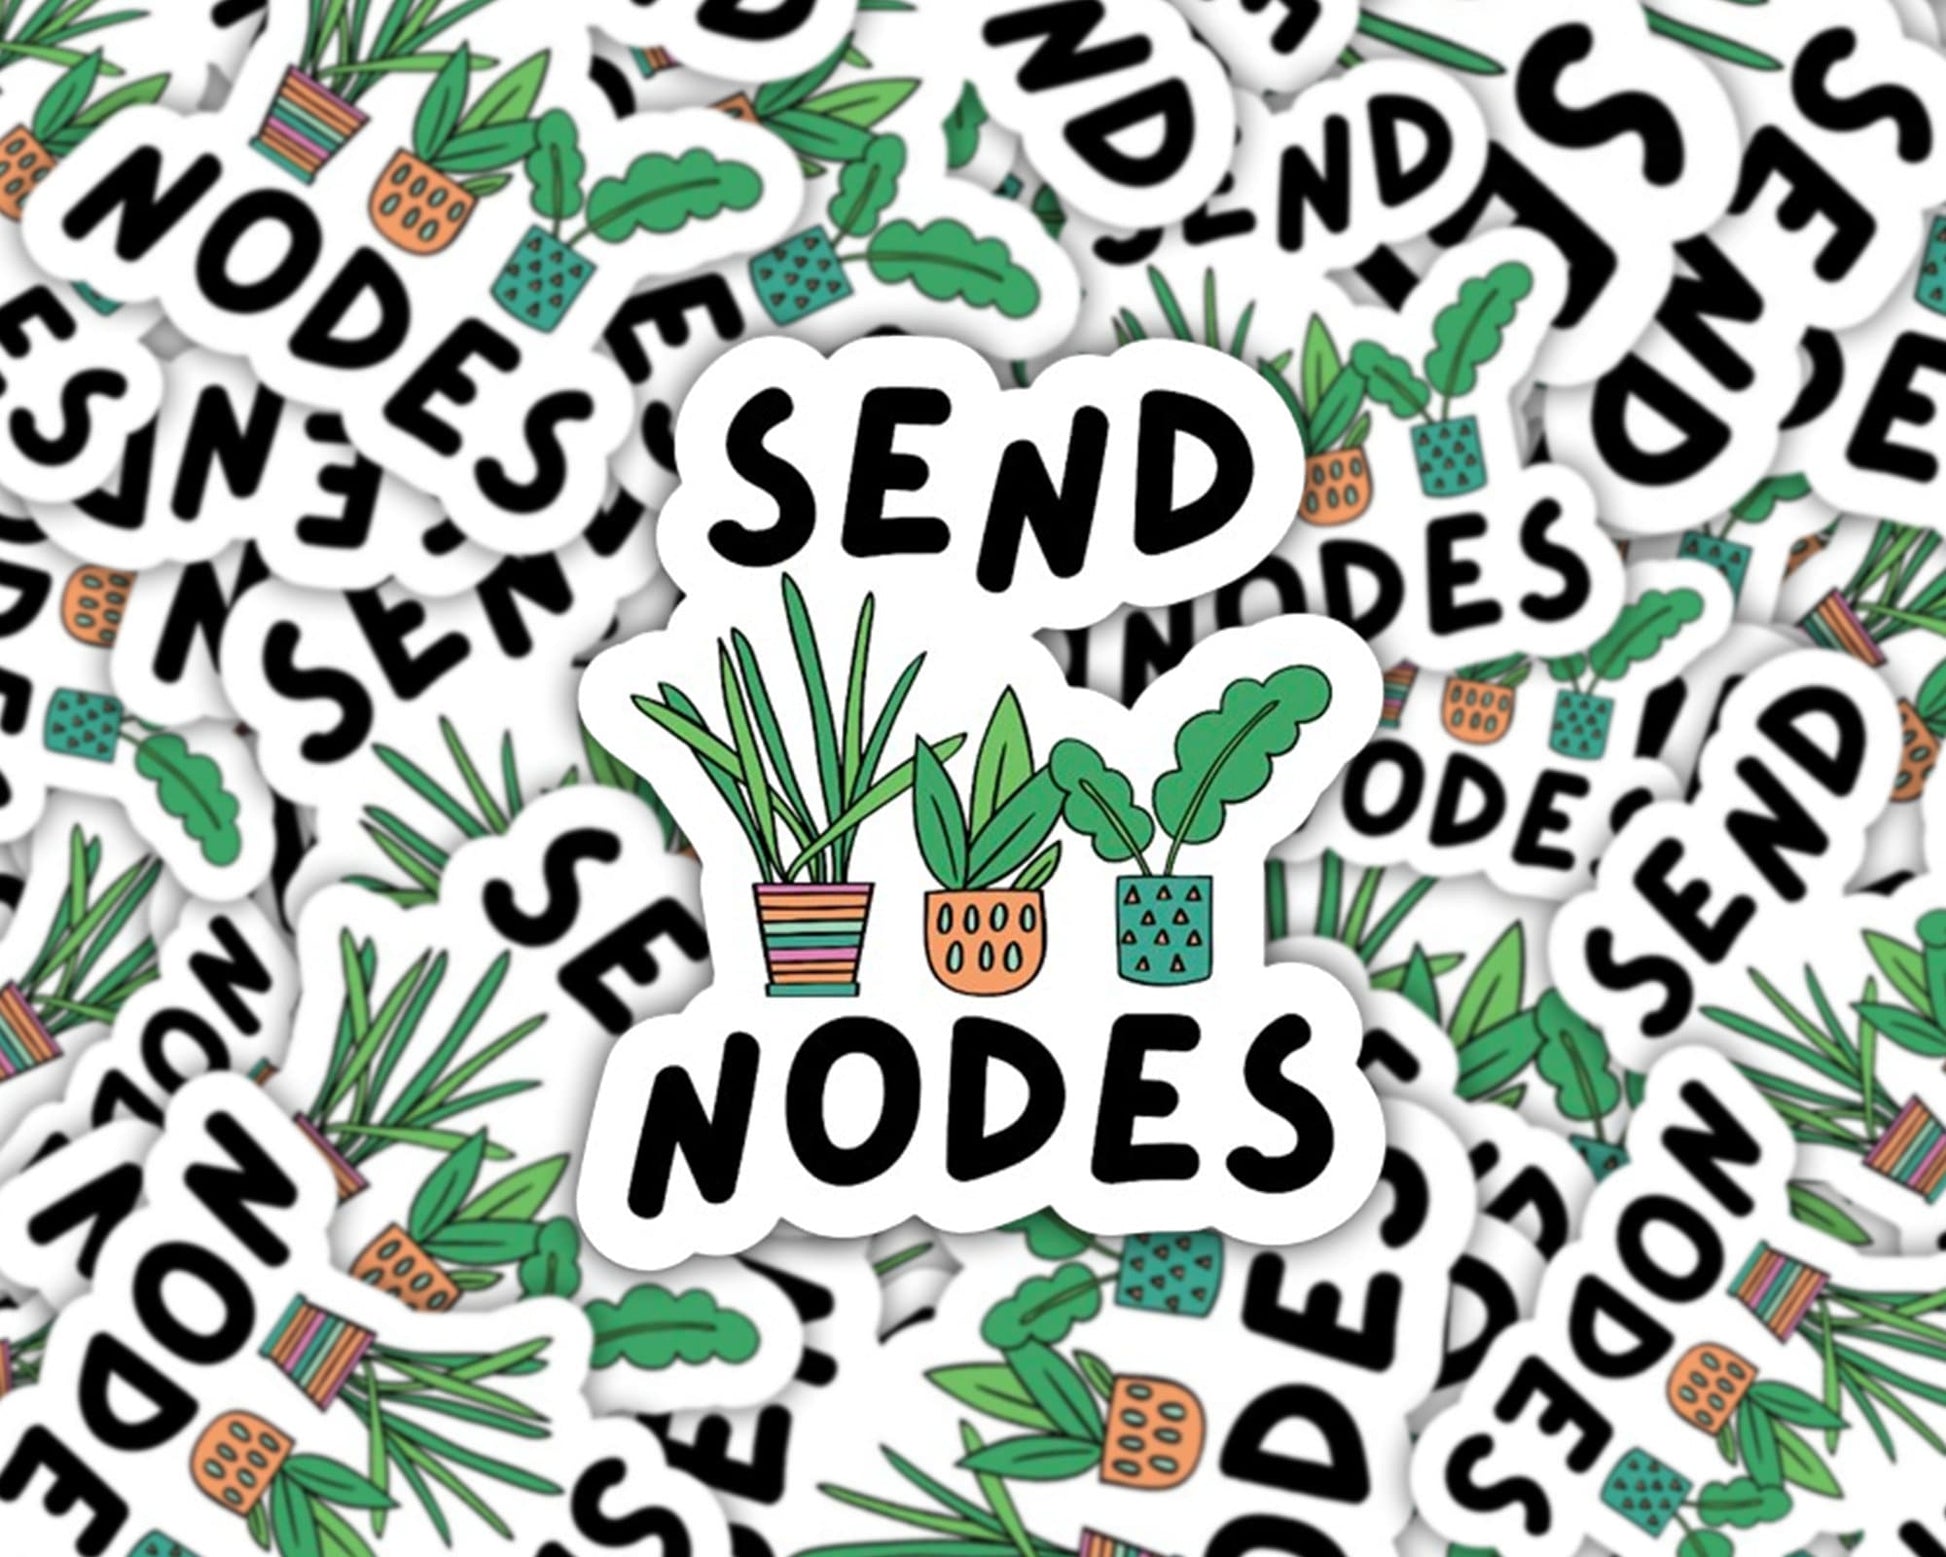 send nodes sticker, plant sticker for water bottle, plant store, funny plant sticker, plant mom sticker, propagation sticker, baby plant